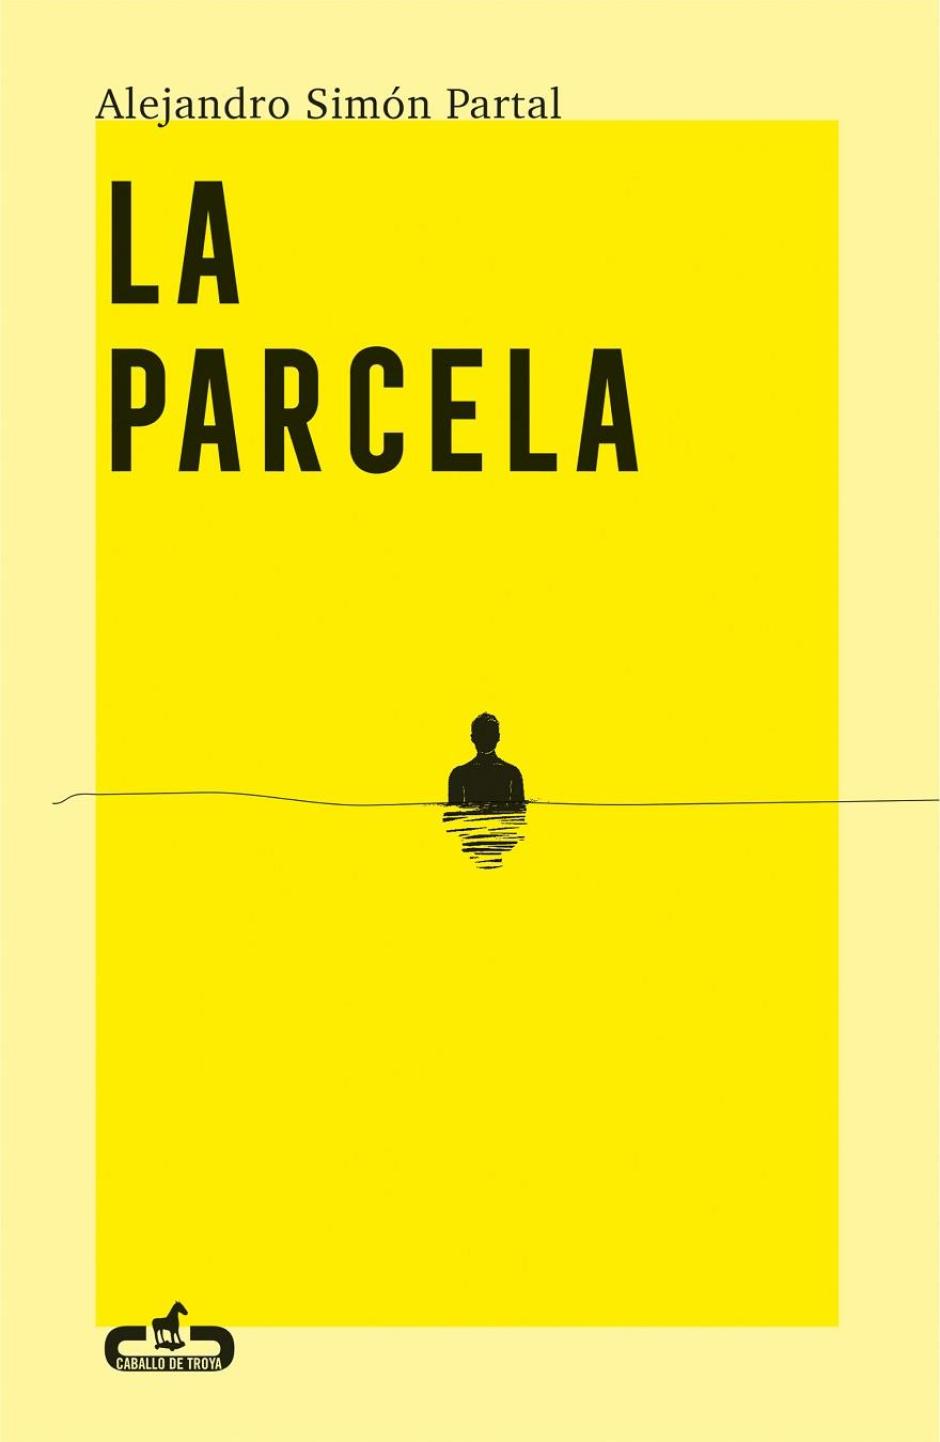 El libro 'La Parcela', de Alejandro Simón Partal